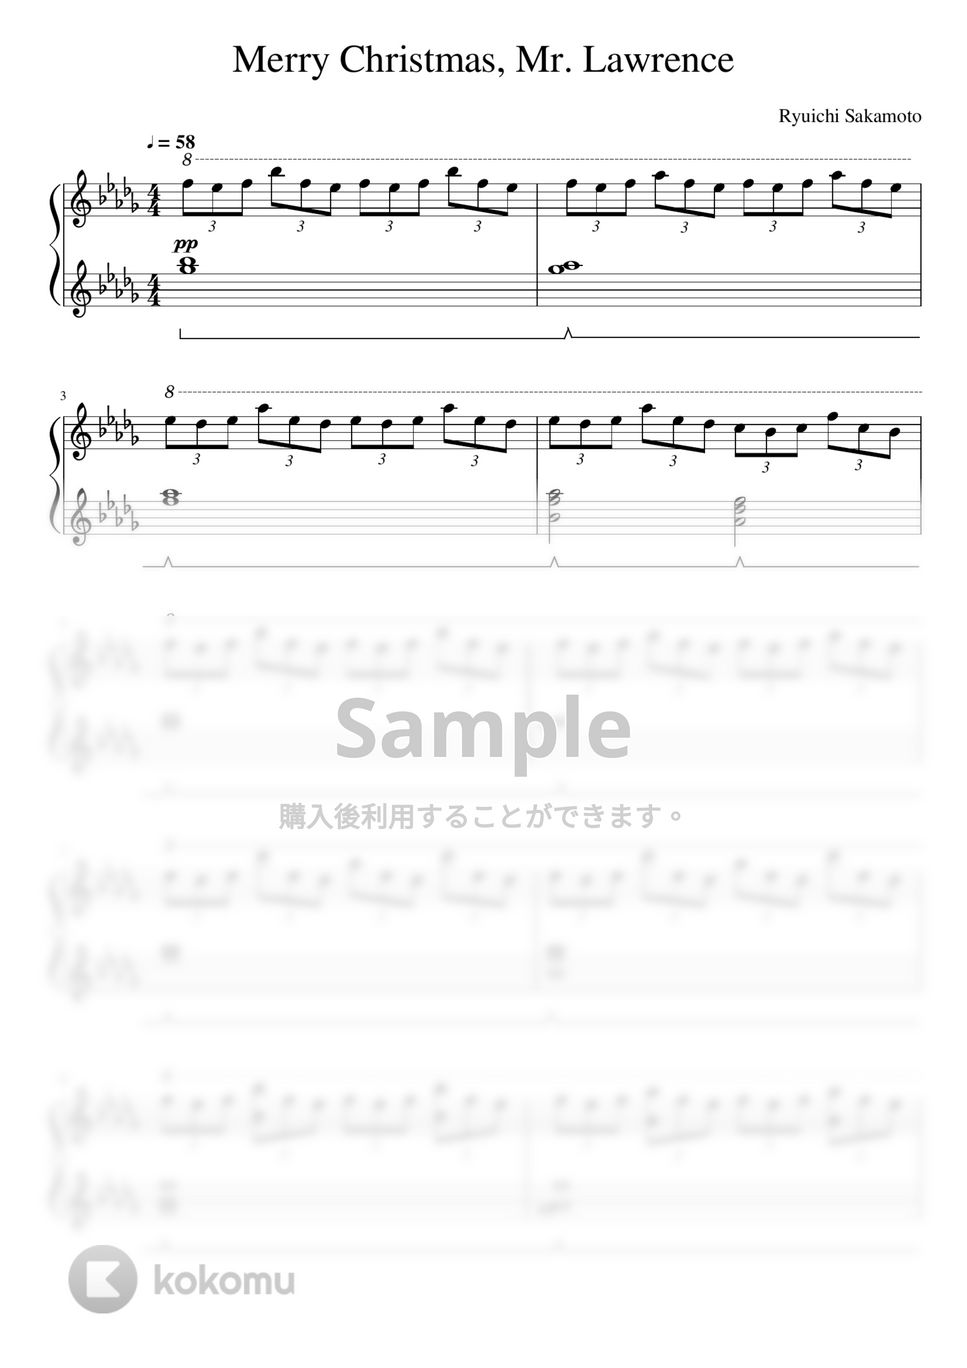 戦場のメリークリスマス (Merry Christmas, Mr. Lawrence) - Merry Christmas Mr.Lawrence (Piano Solo) by Kaide